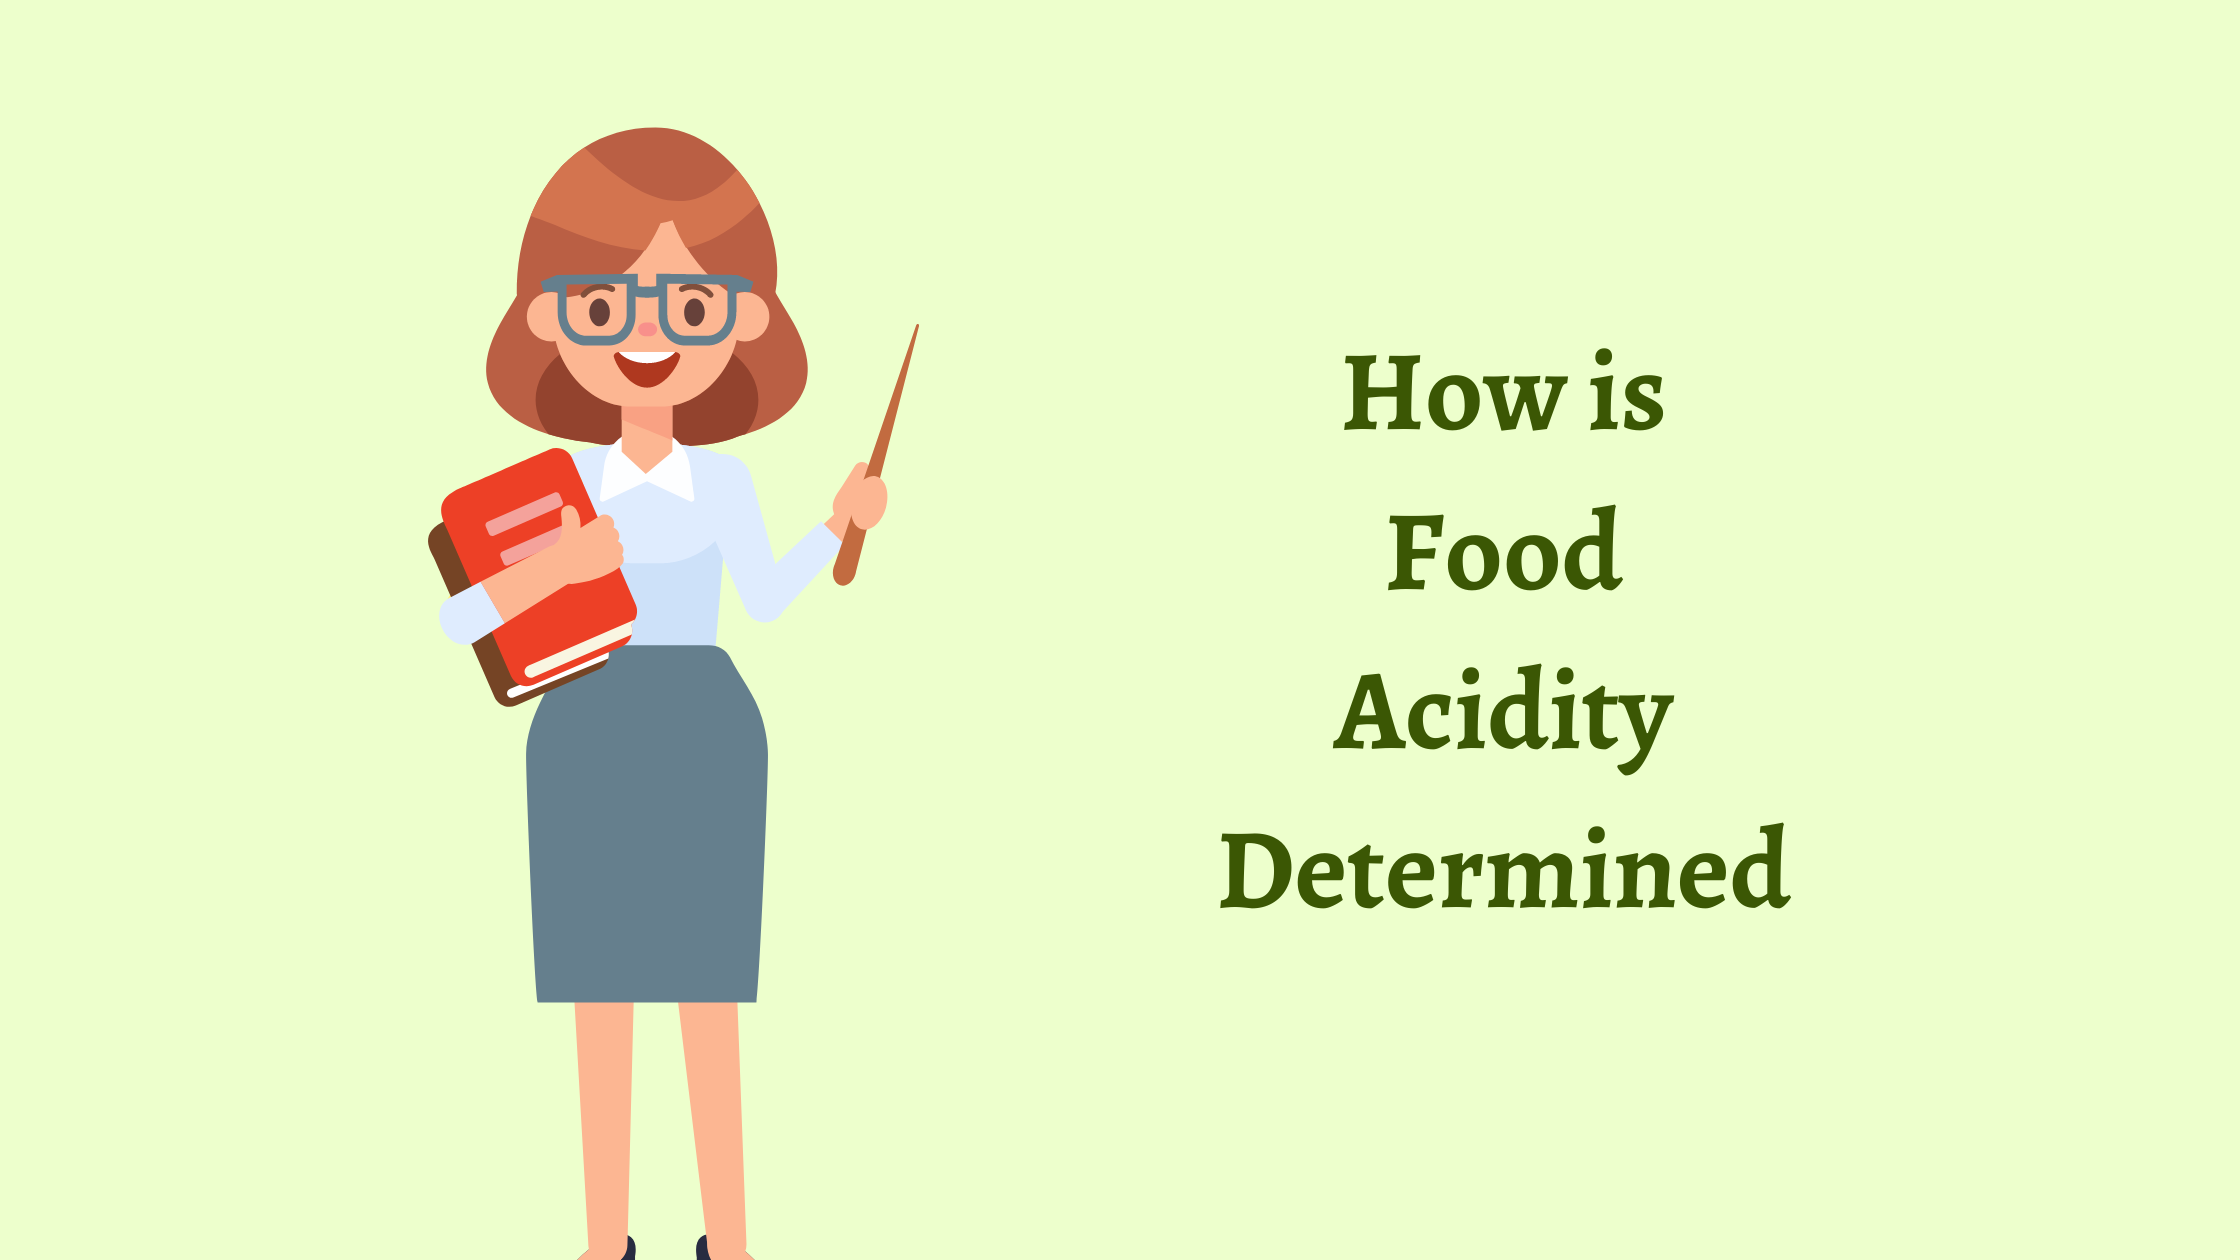 Food Acidity Determined